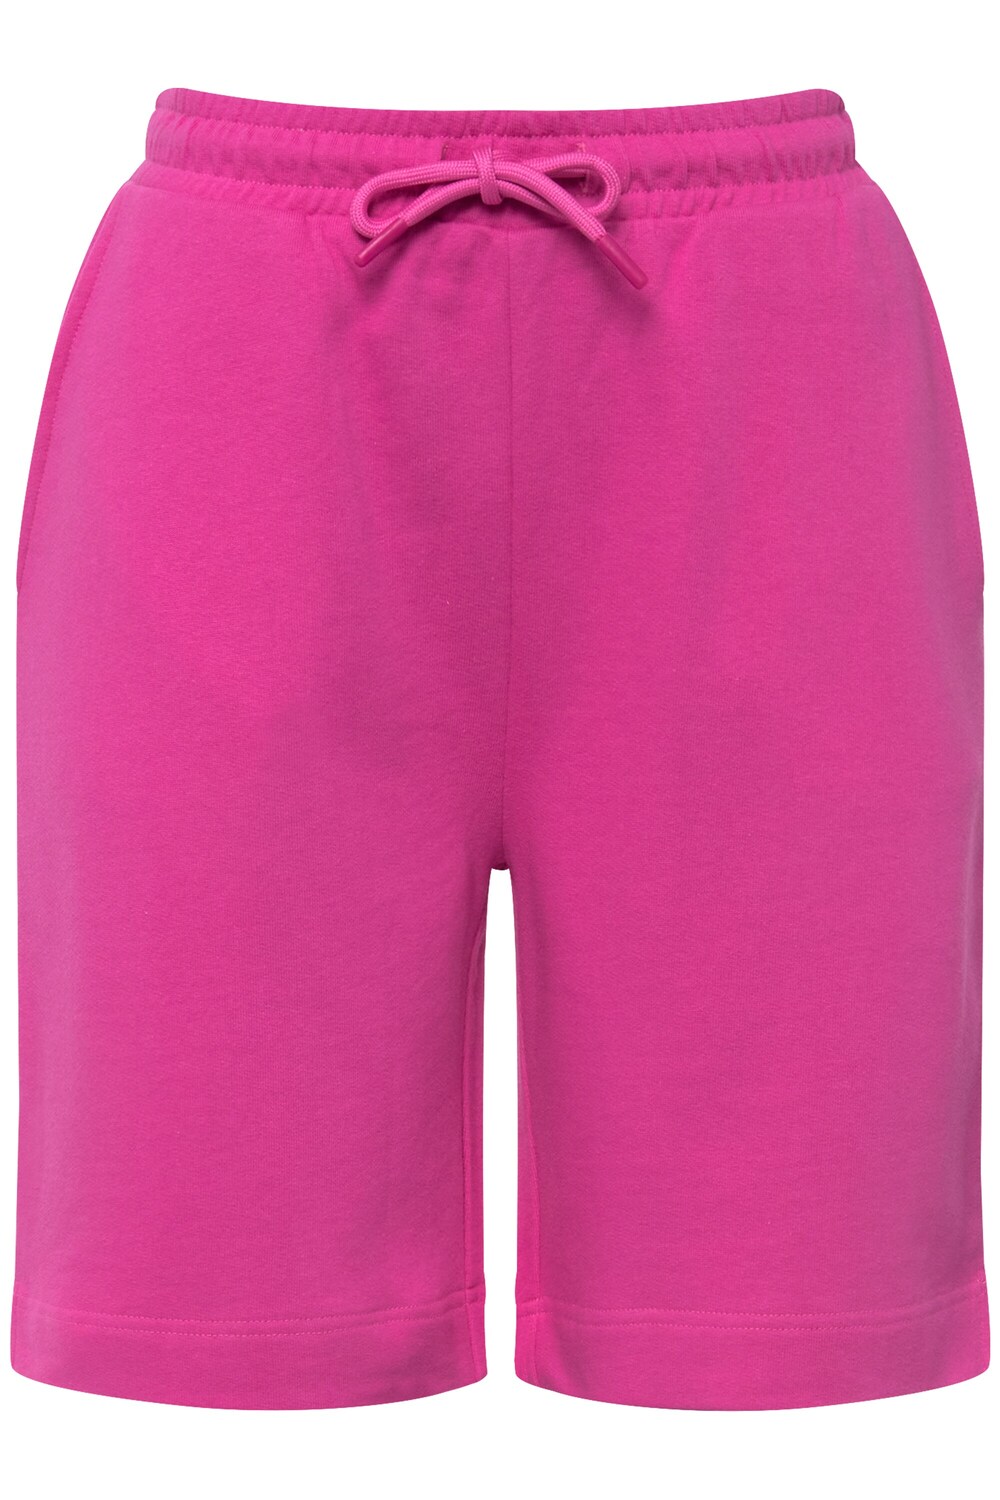 Обычные брюки LAURASØN, светло-розовый обычные брюки laurasøn крем